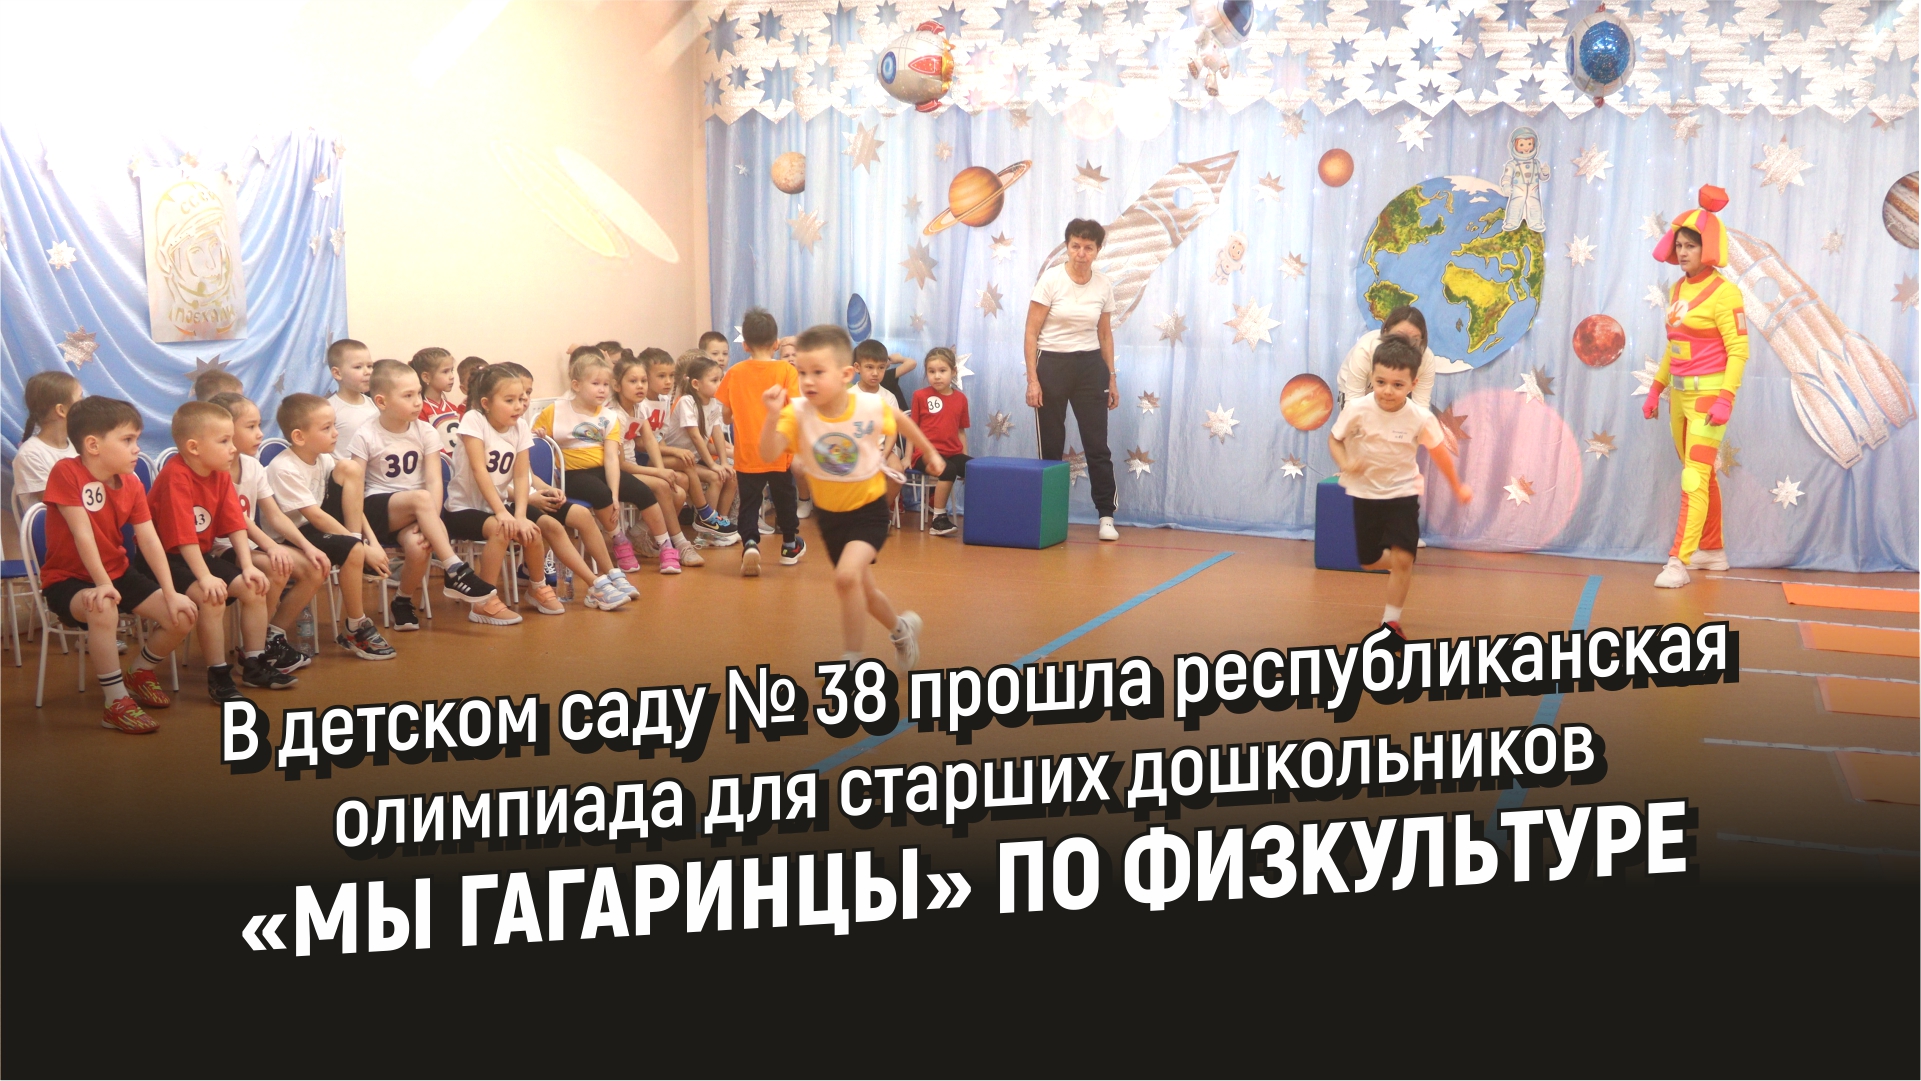 В детском саду № 38 прошла олимпиада для старших дошкольников «Мы гагаринцы» по физкультуре